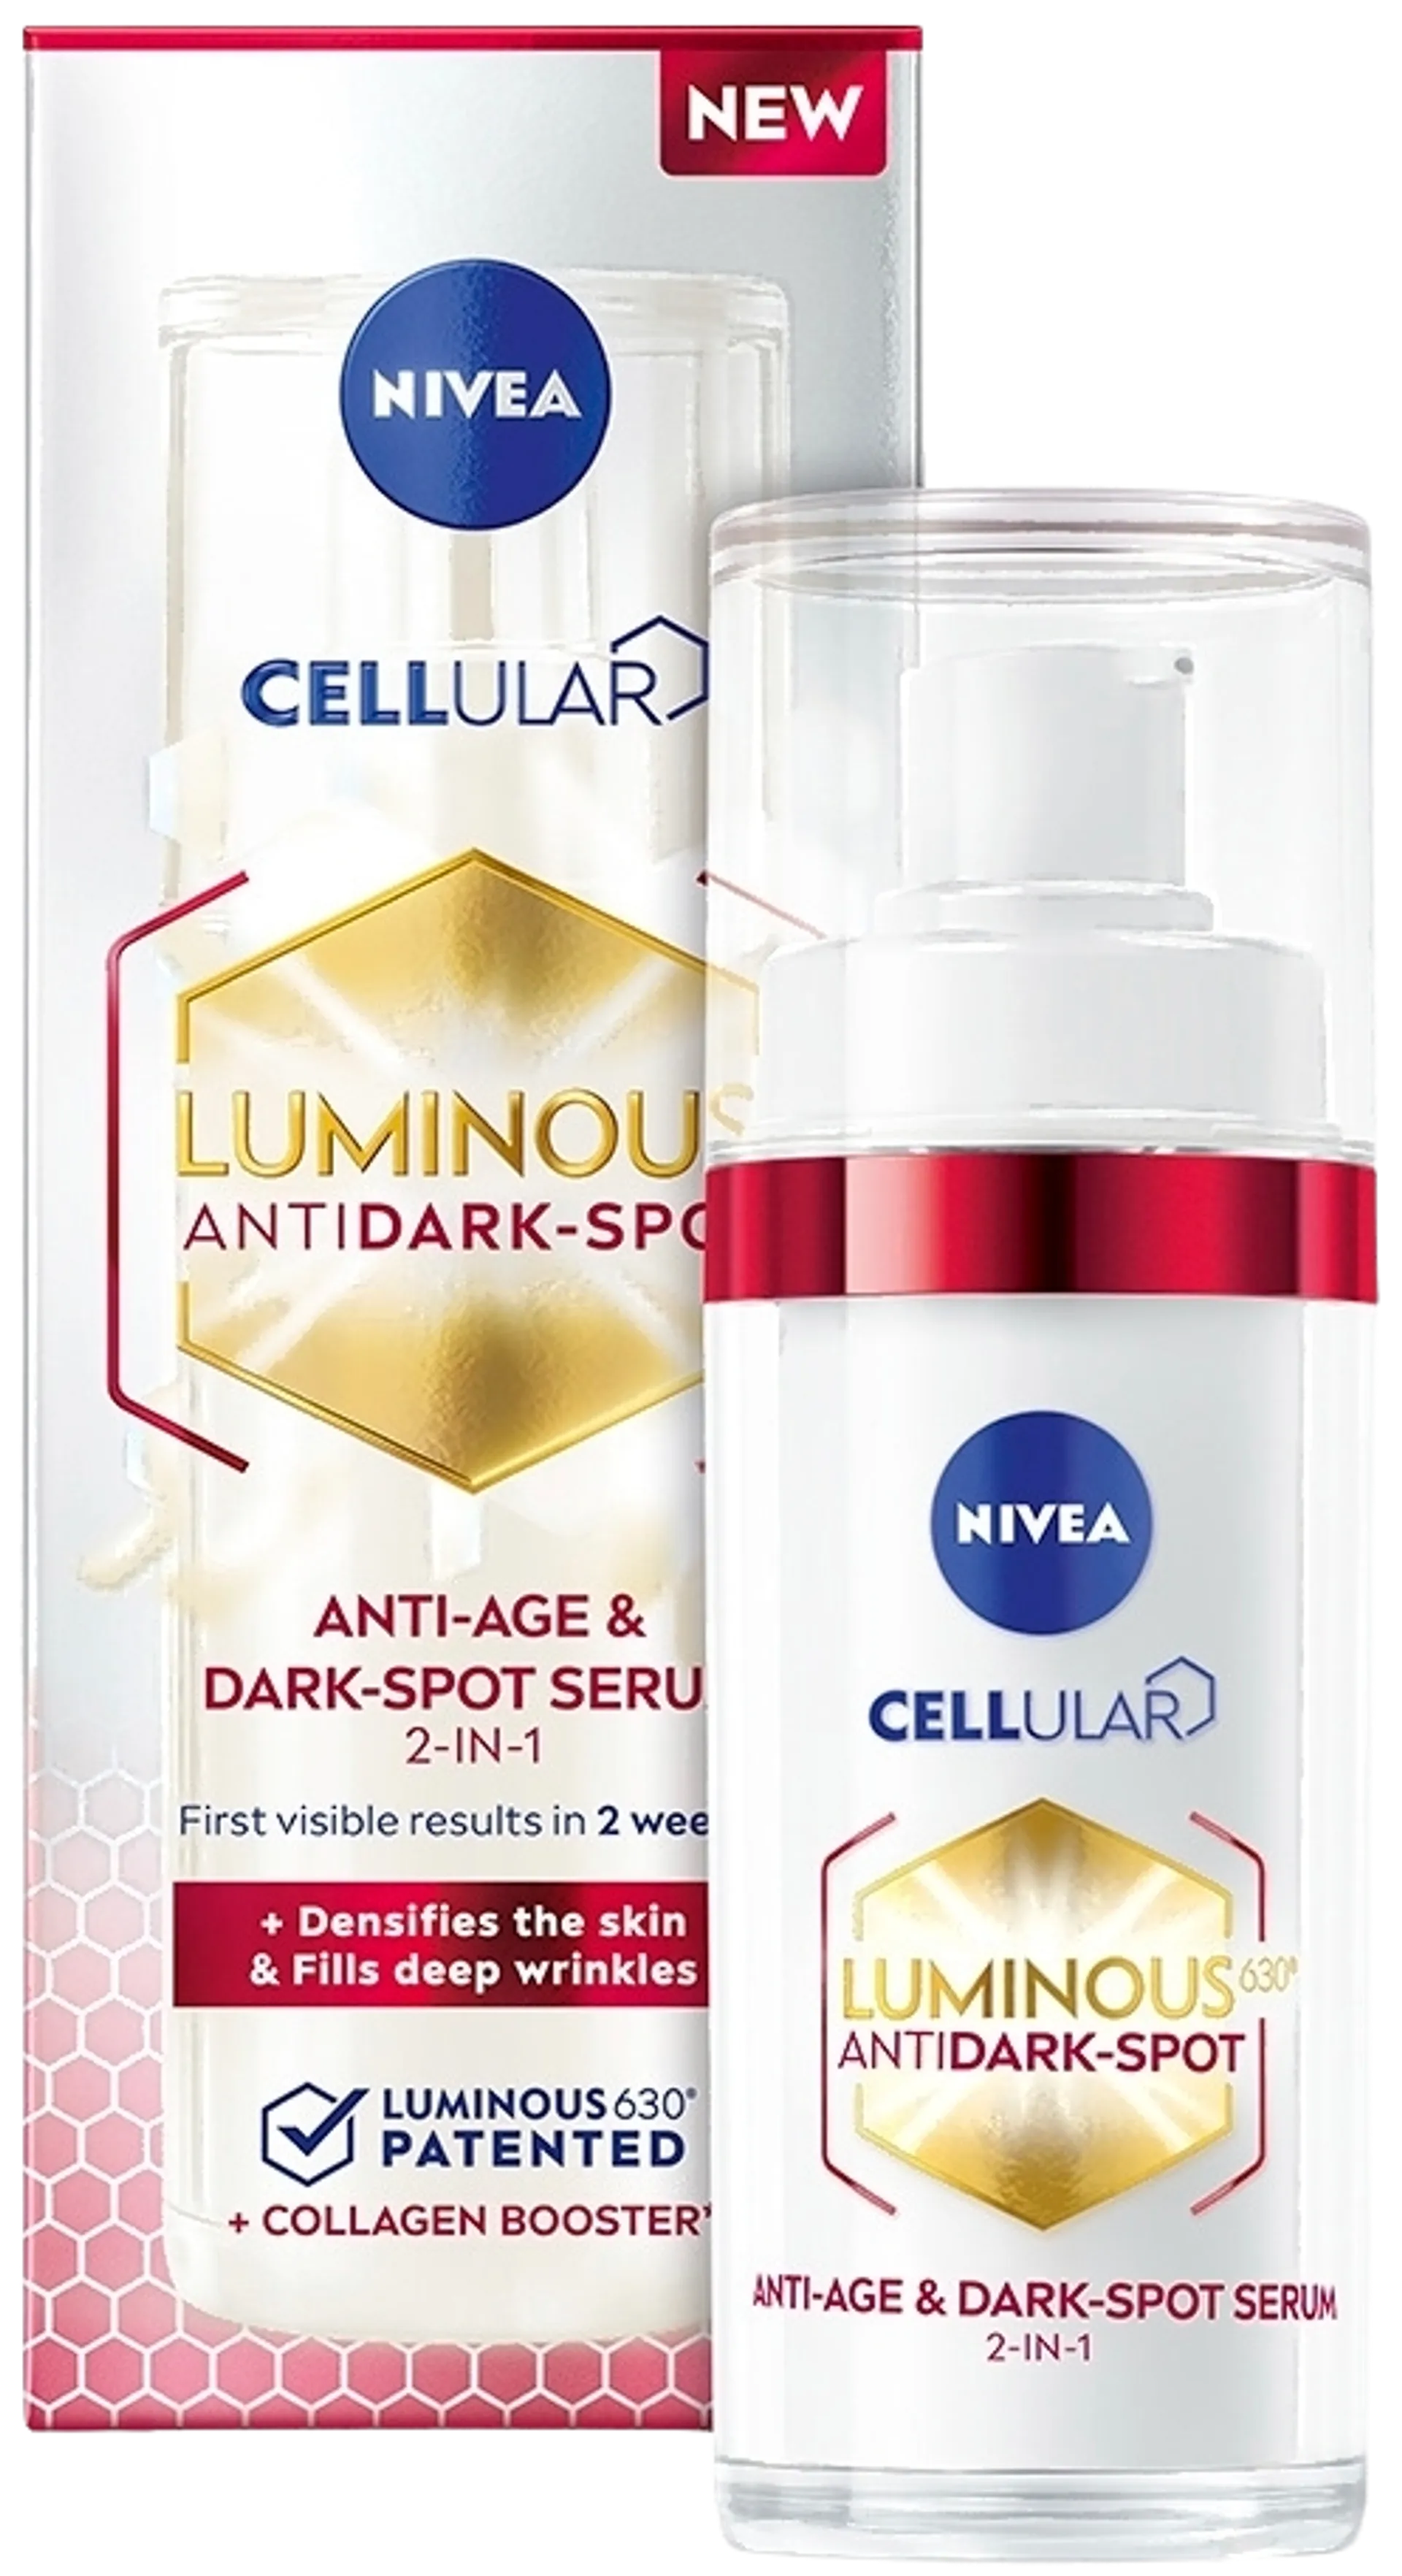 NIVEA 30ml Cellular Luminous630 Anti-Age & Dark-Spot Serum -kasvoseerumi - 3